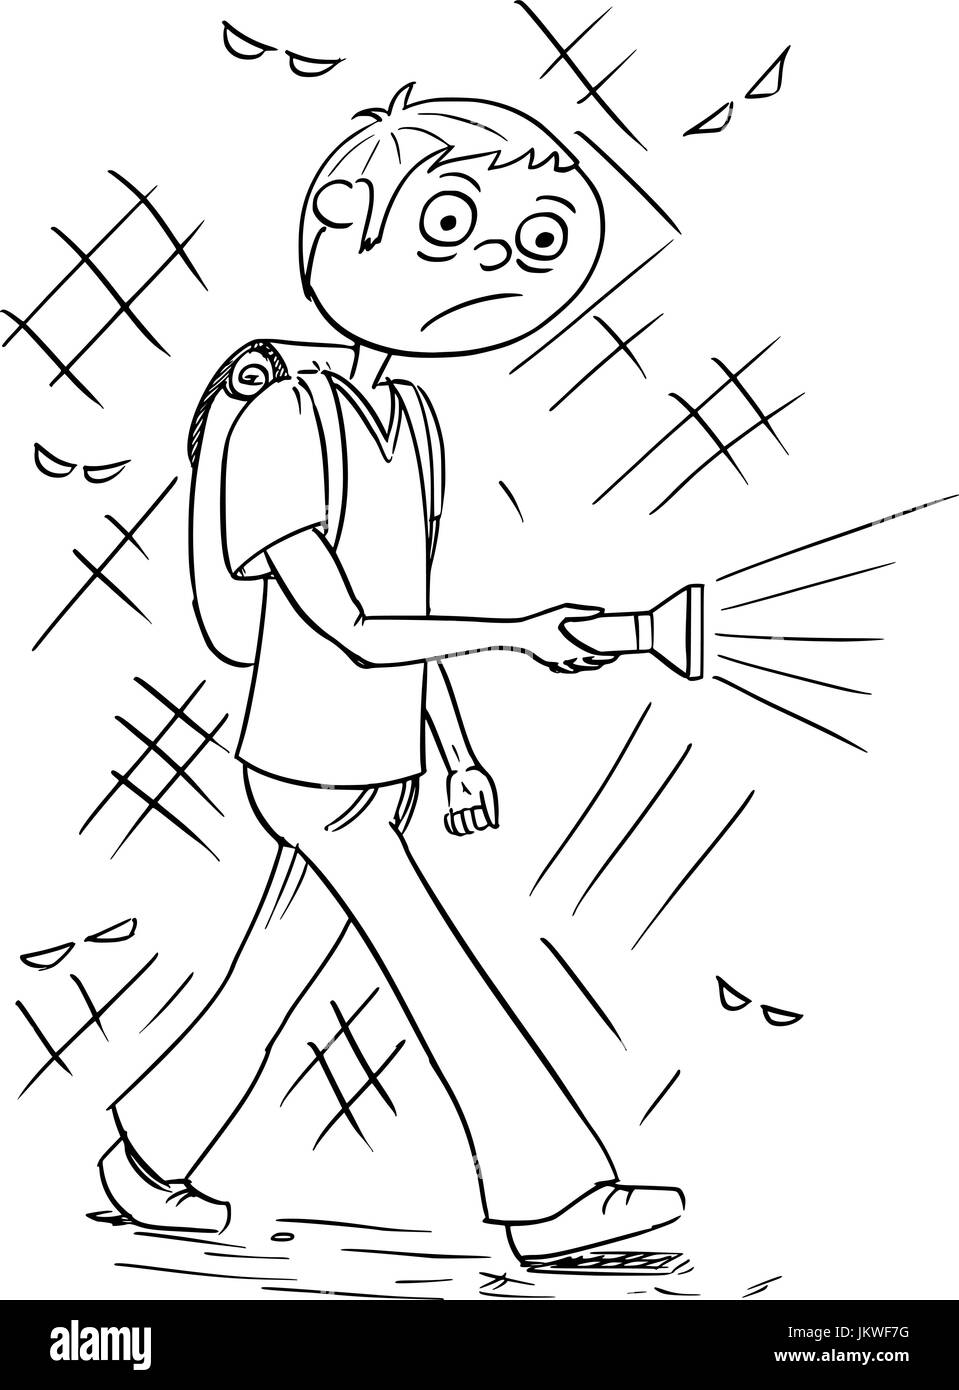 Handzeichnung Cartoon-Vektor-Illustration beängstigend junge oder ein junger Mann mit Taschenlampe zu Fuß durch dunkle Nacht. Stock Vektor